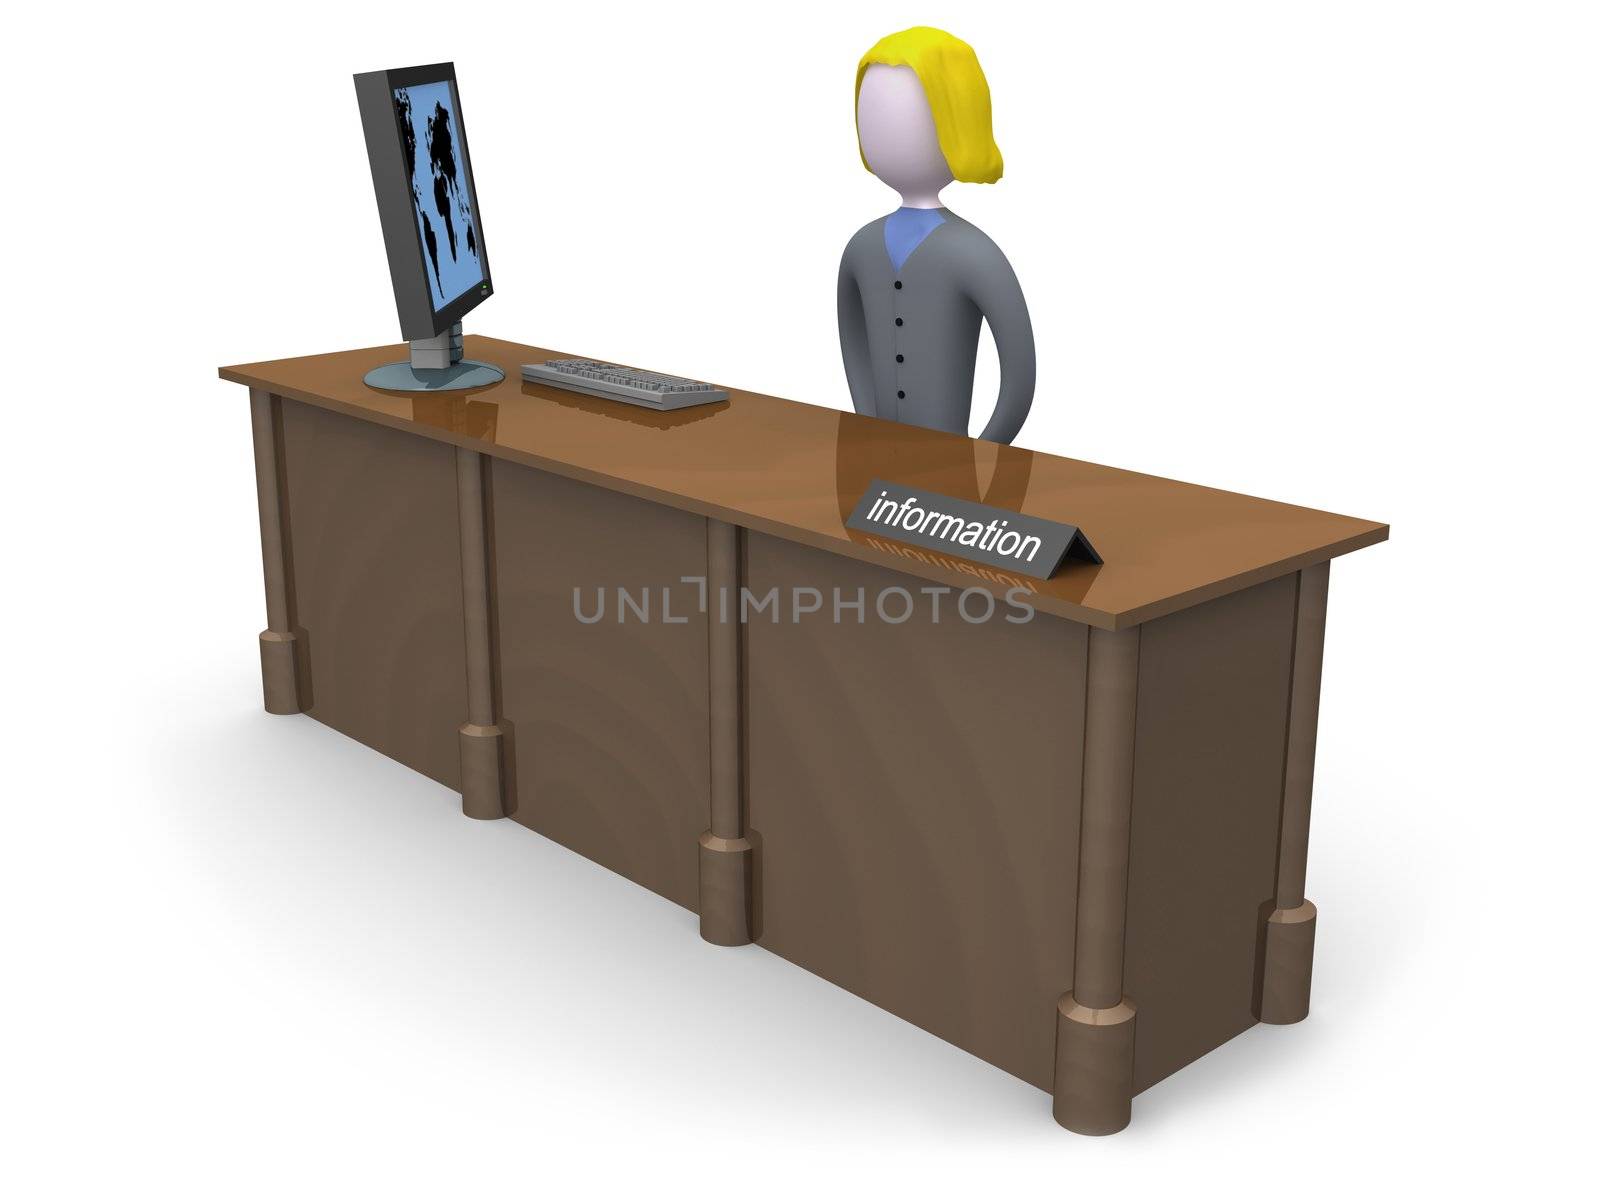 Information Desk by 3pod